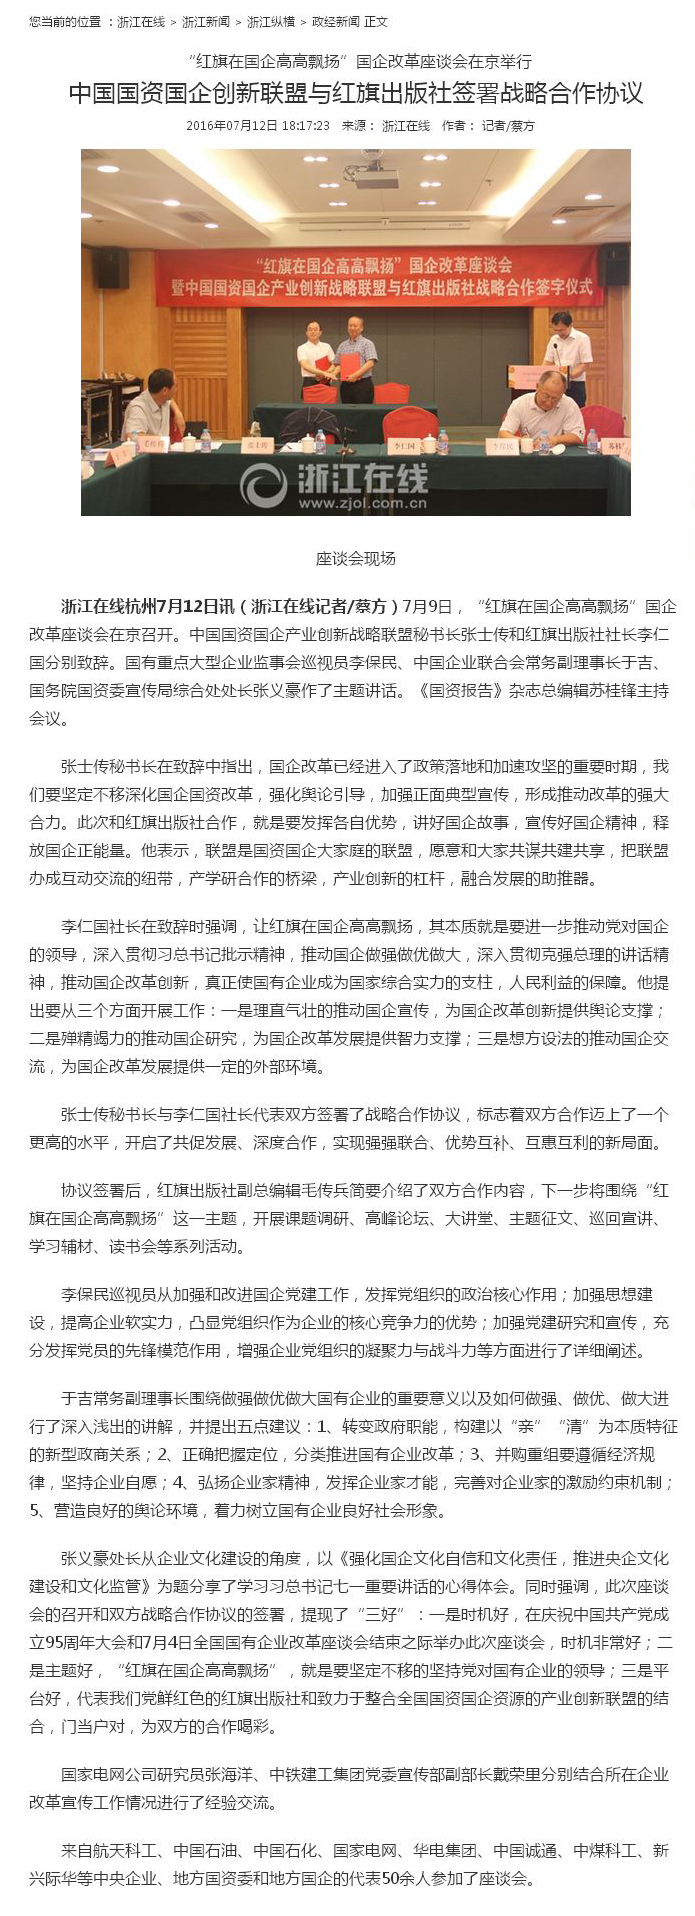 5、中国国资国企创新联盟与红旗出版社签署战略合作协议-浙江新闻-浙江在线.jpg